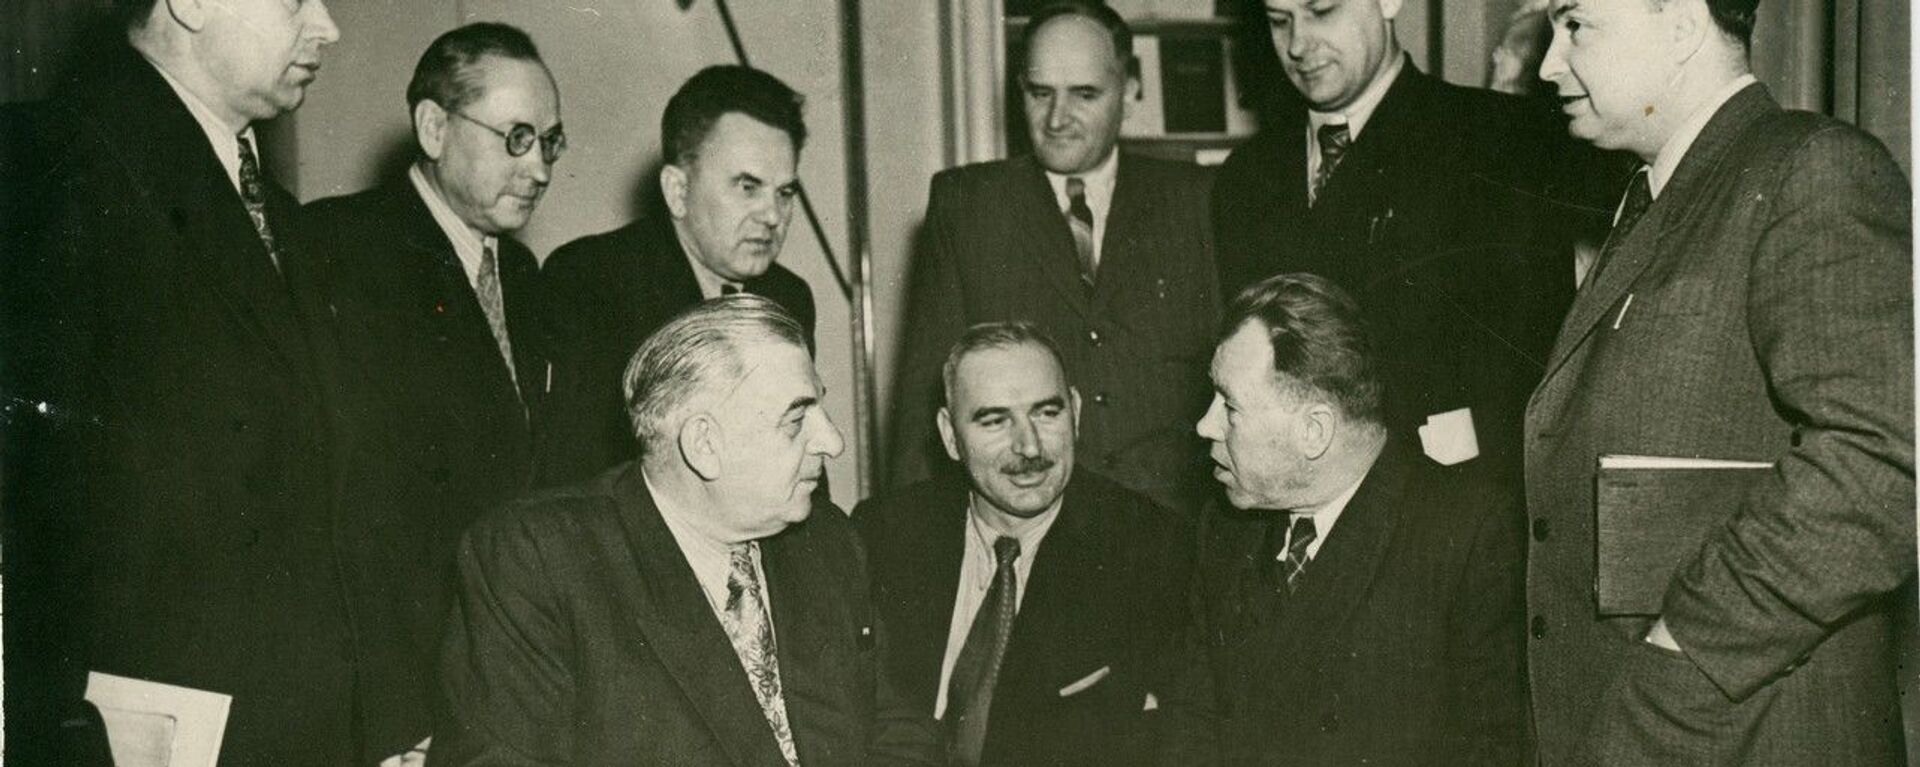 Г. Леонидзе и А. Гомиашвили с российскими писателями. Москва, 1954 г. - Sputnik Грузия, 1920, 08.05.2021